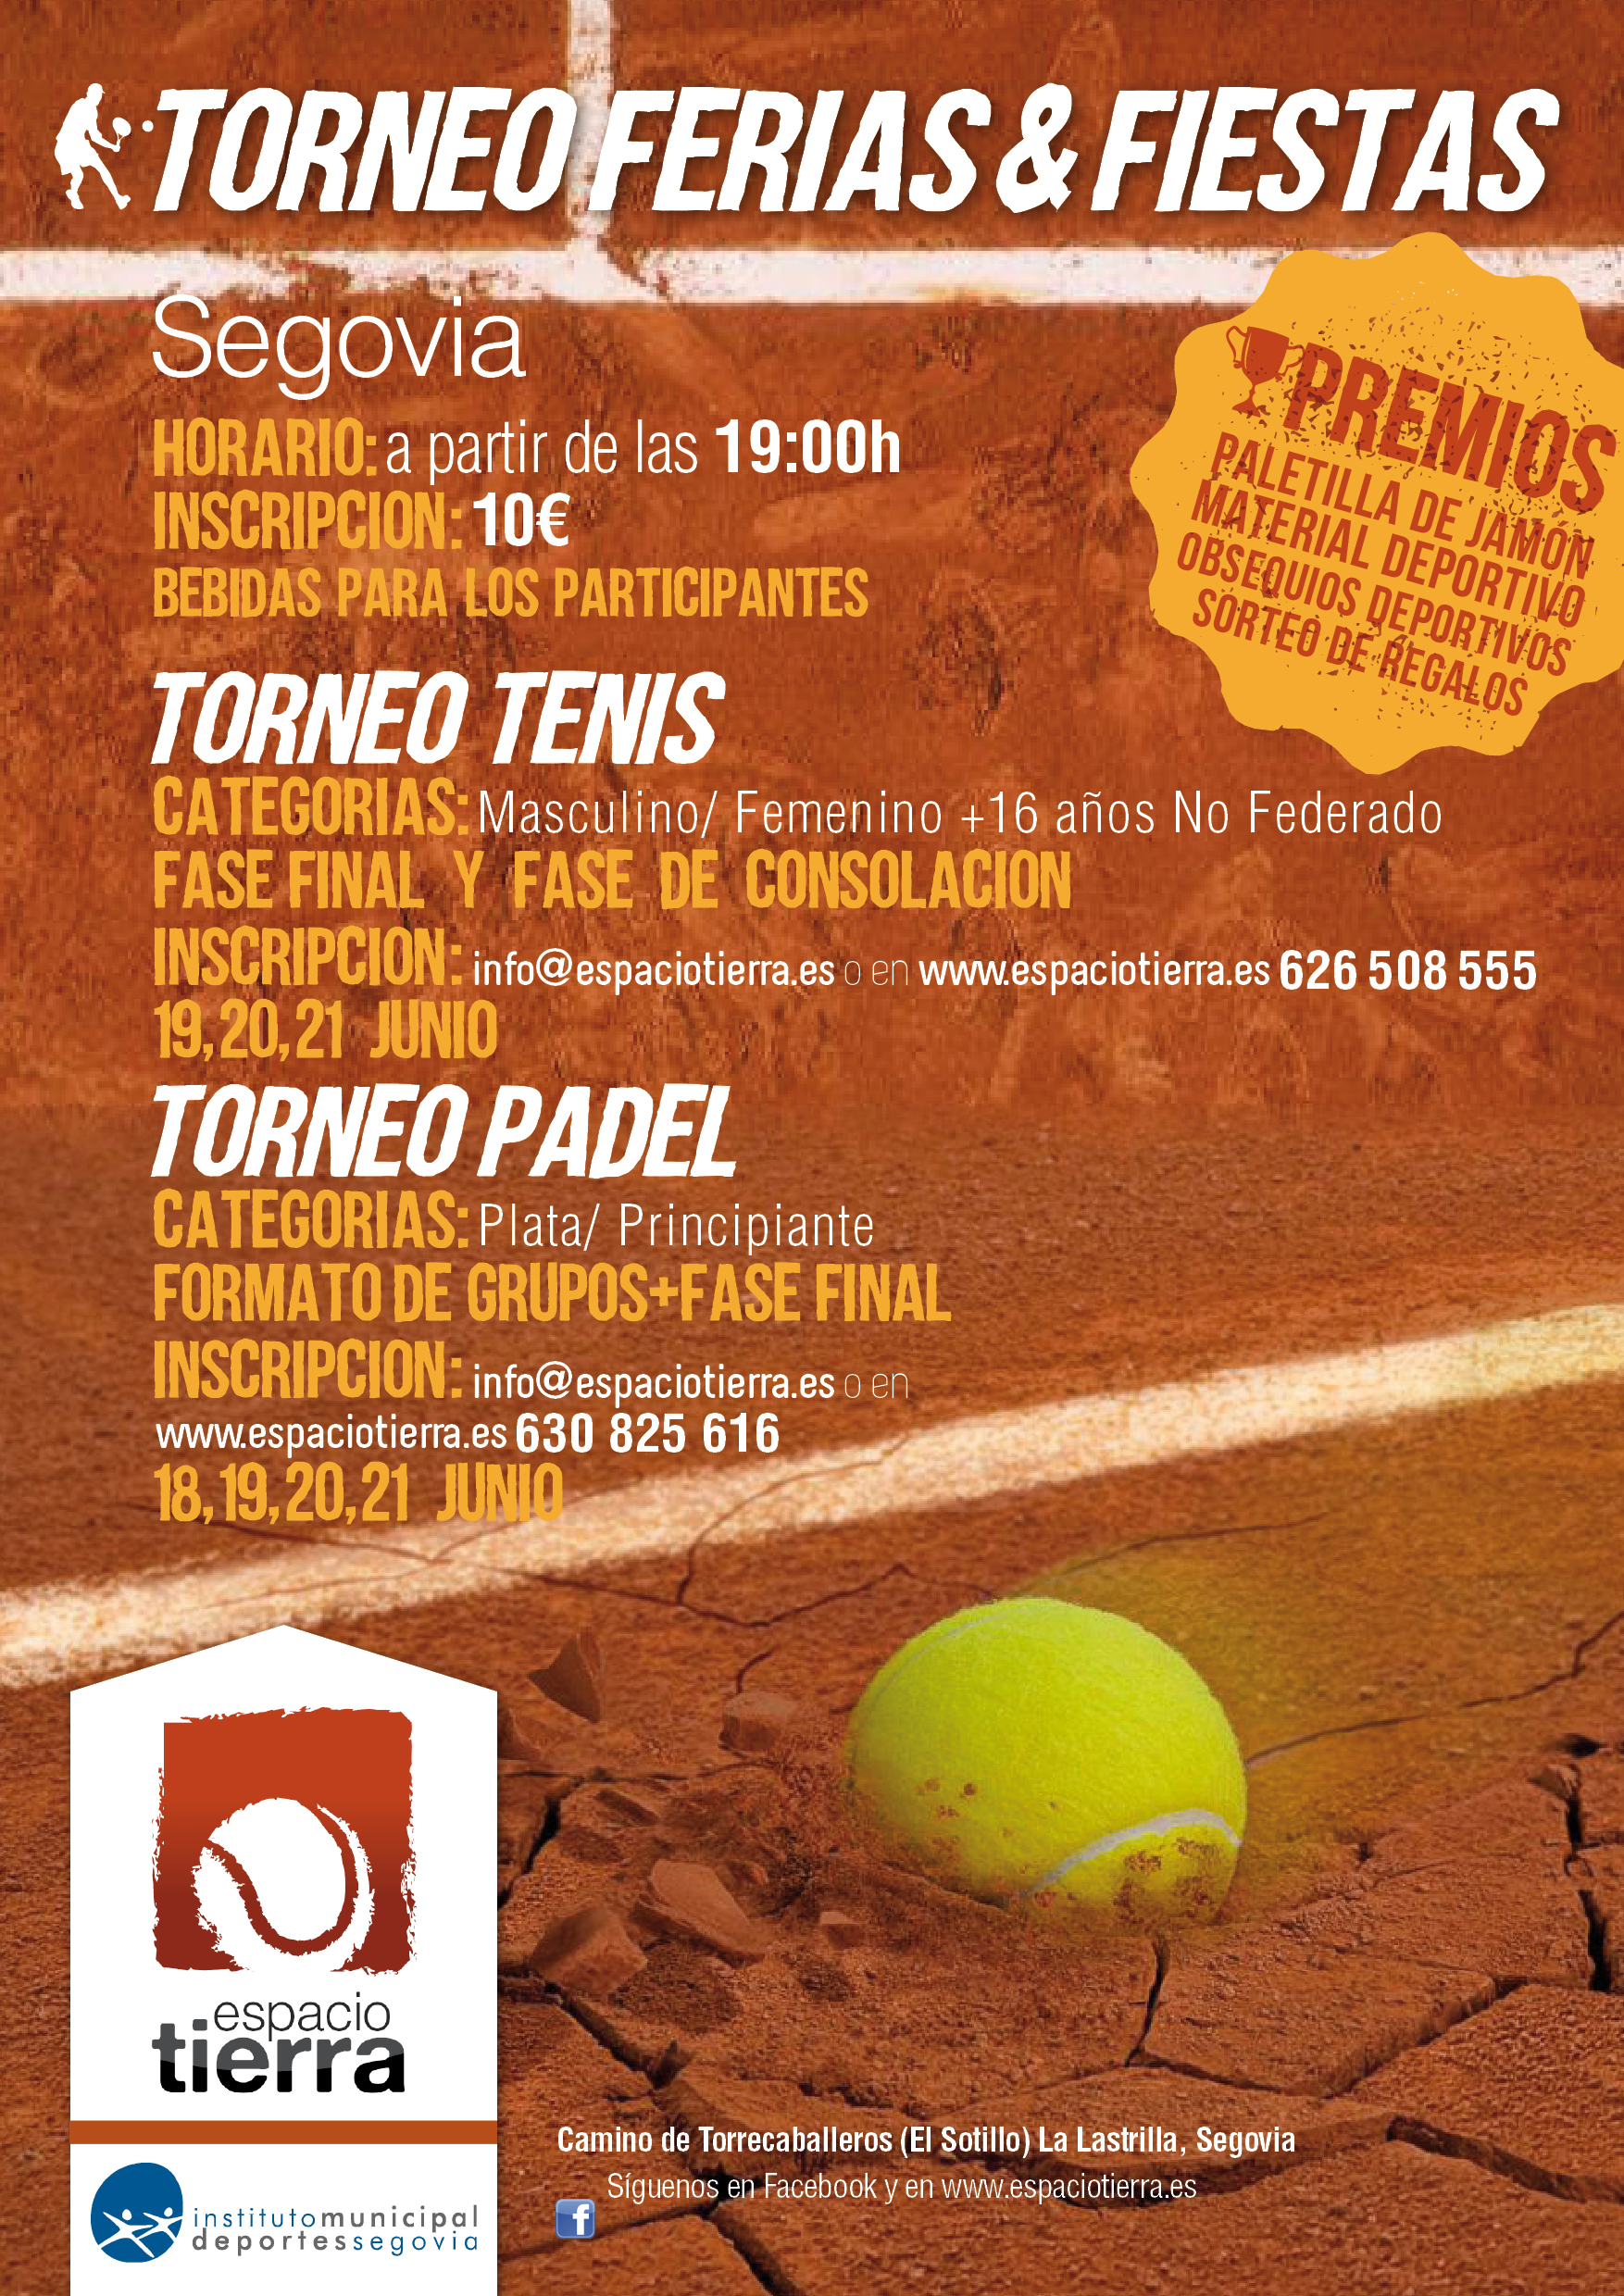 Torneo de Padel y Tenis Ferias y Fiestas 2015